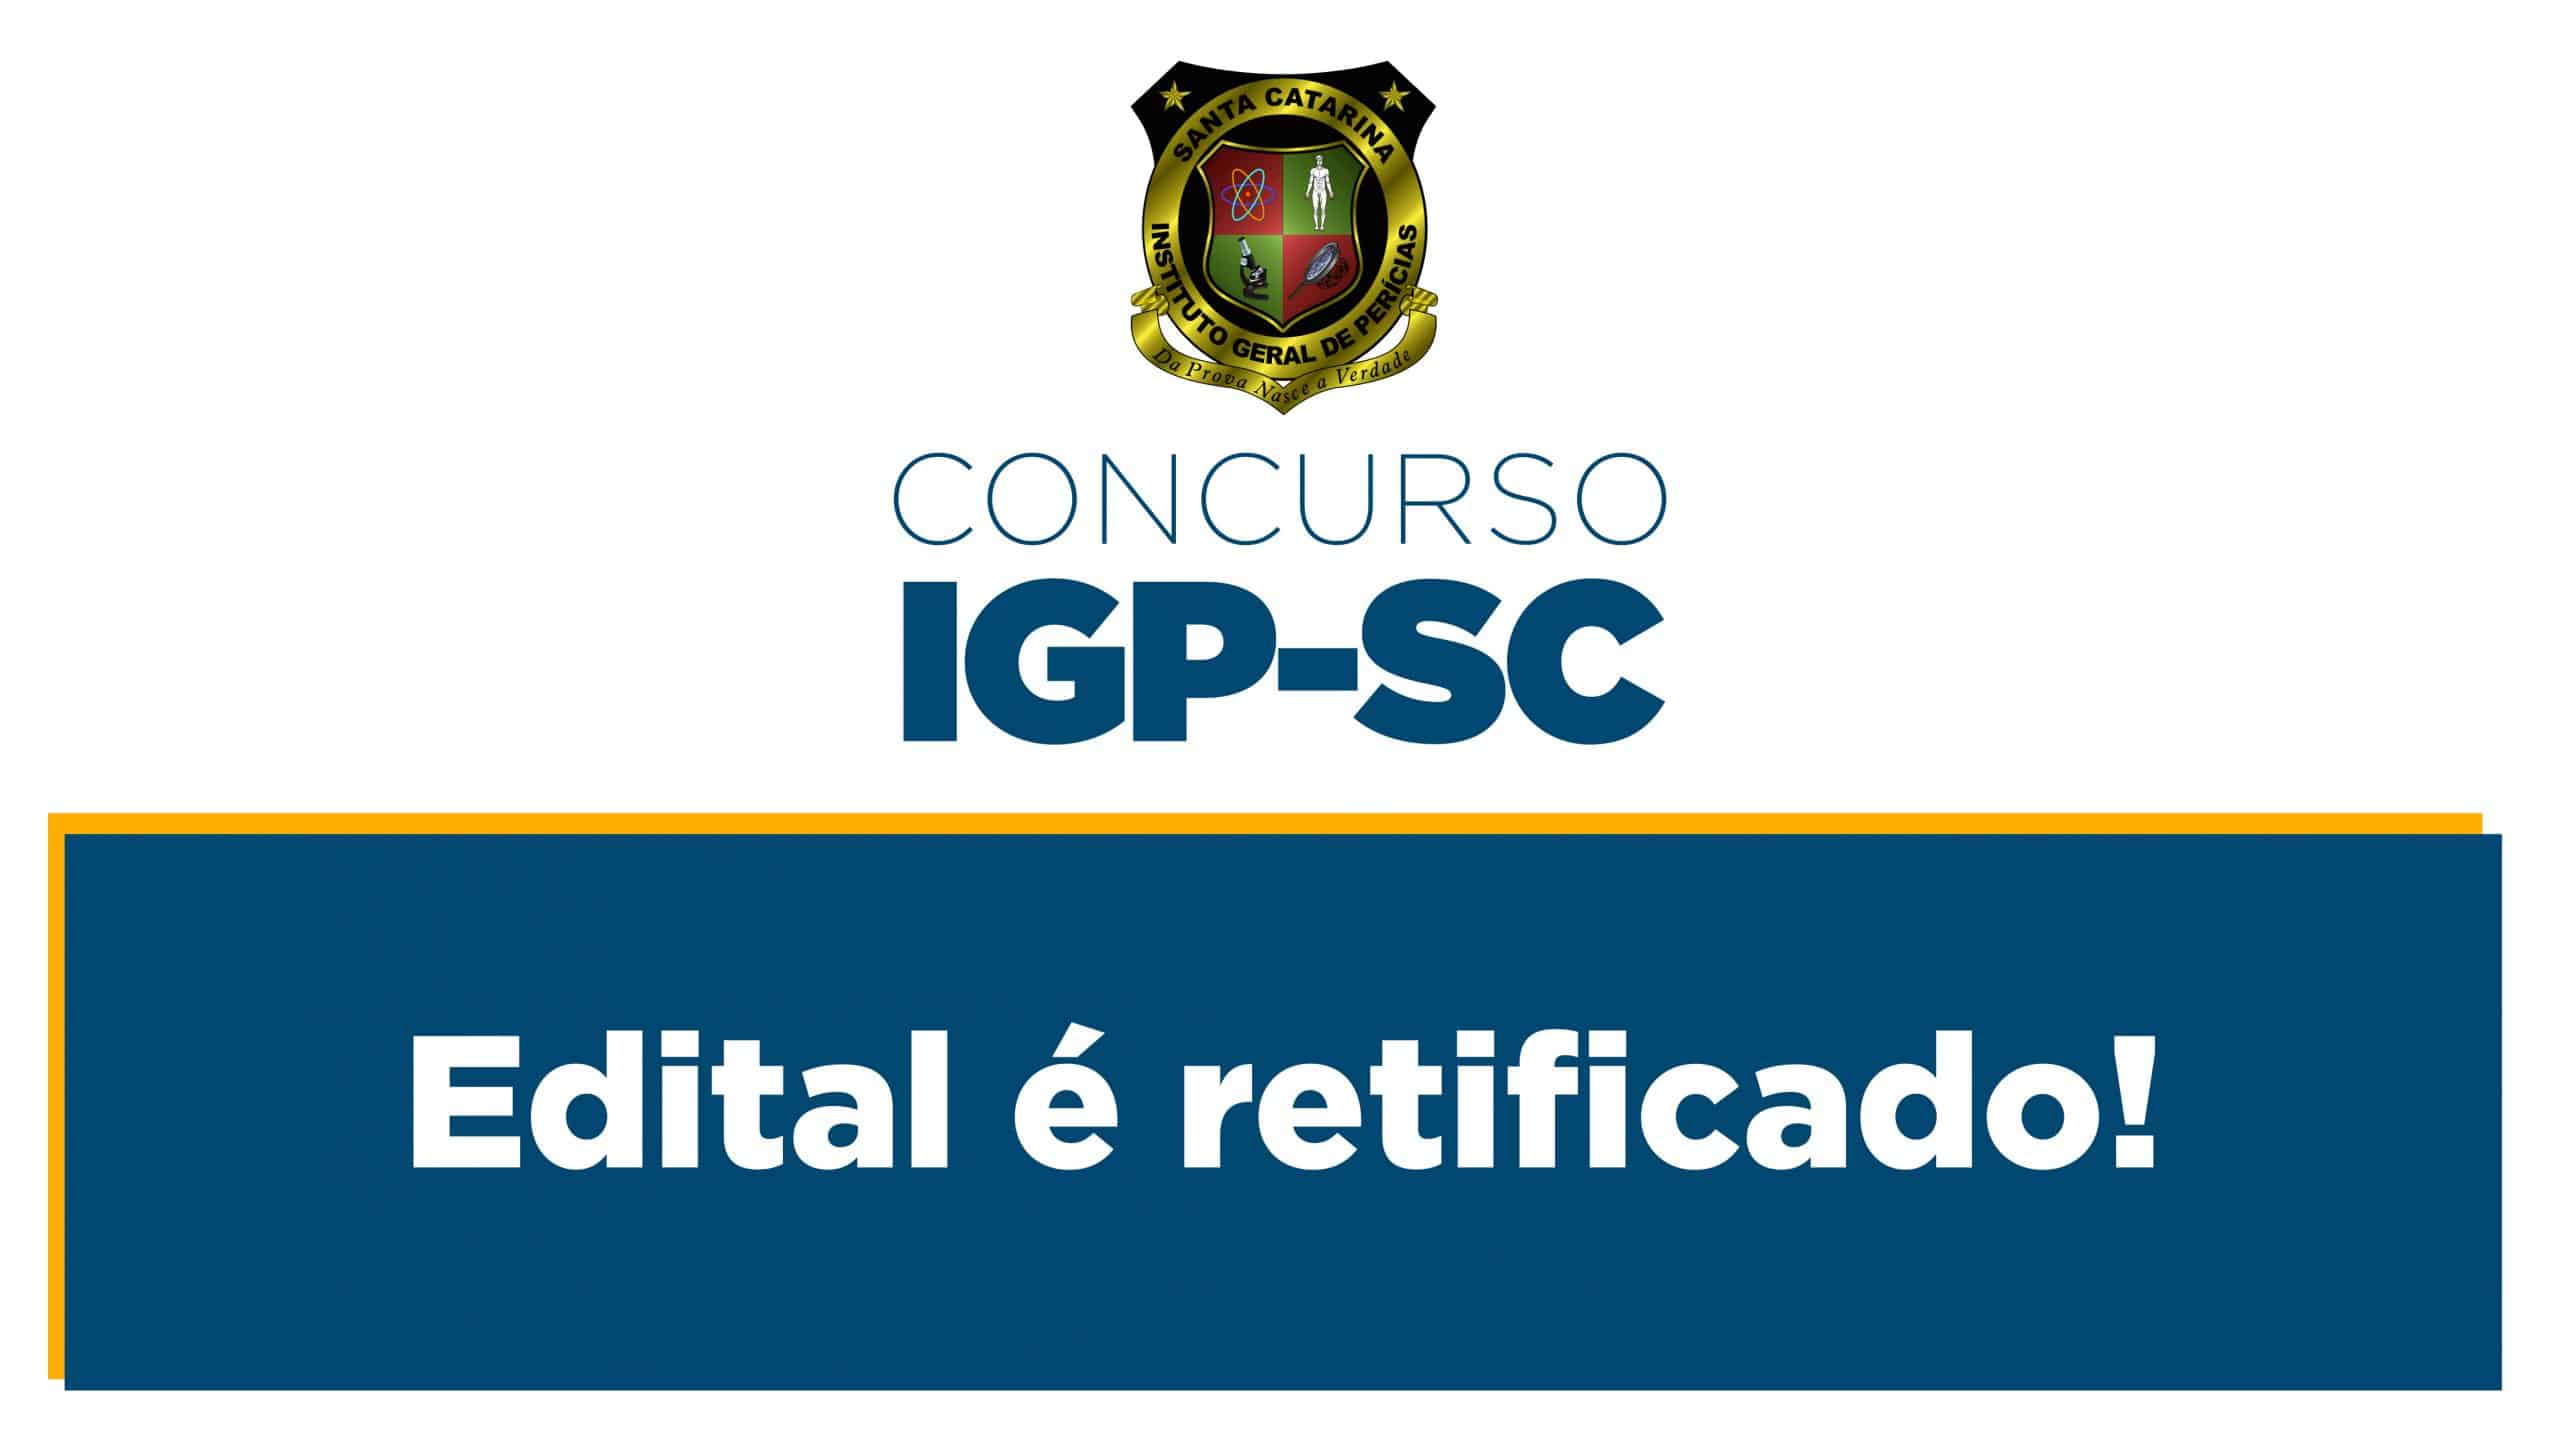 Concurso IGP-SC: Edital retificado! - Rico Domingues